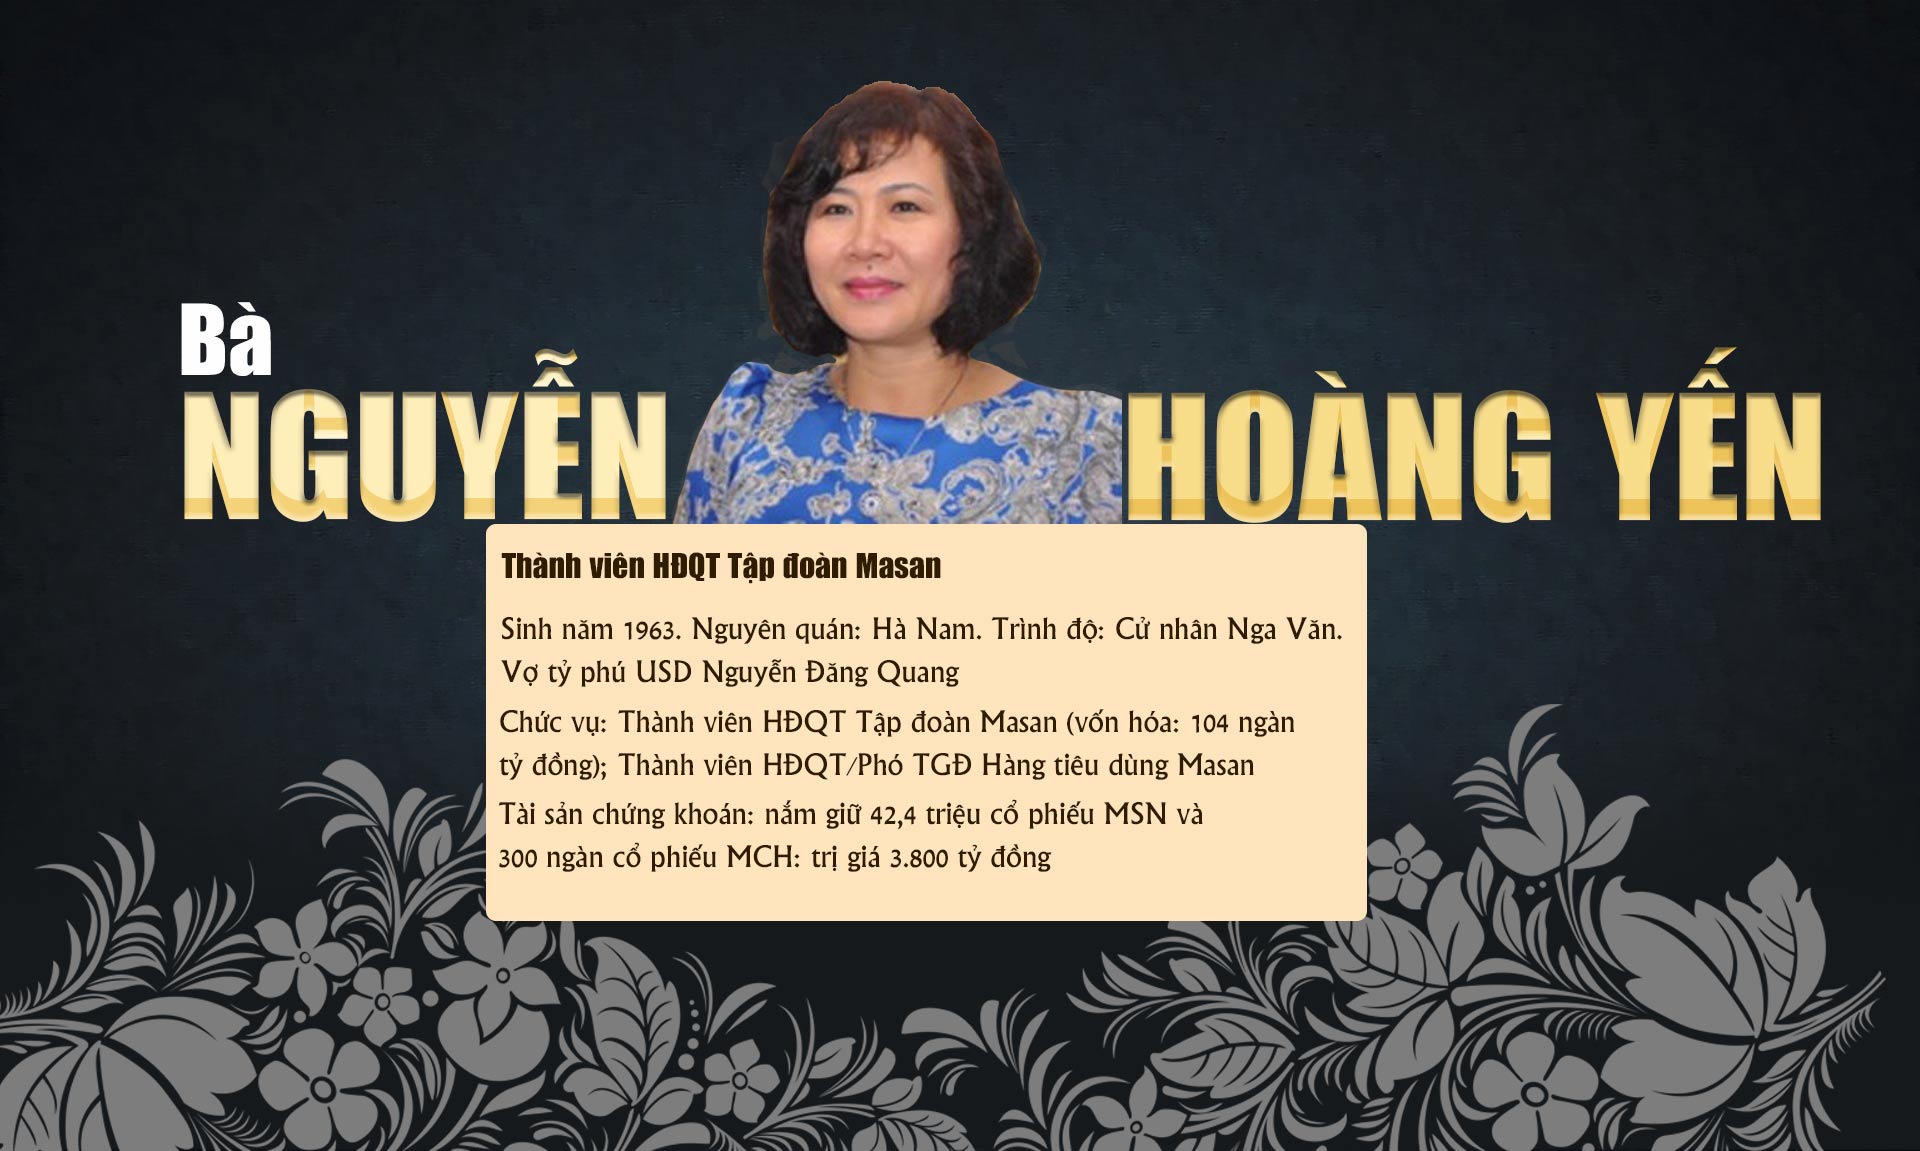 10 phụ nữ Việt gây choáng bởi sự giàu có, giỏi giang và quyền lực - 11